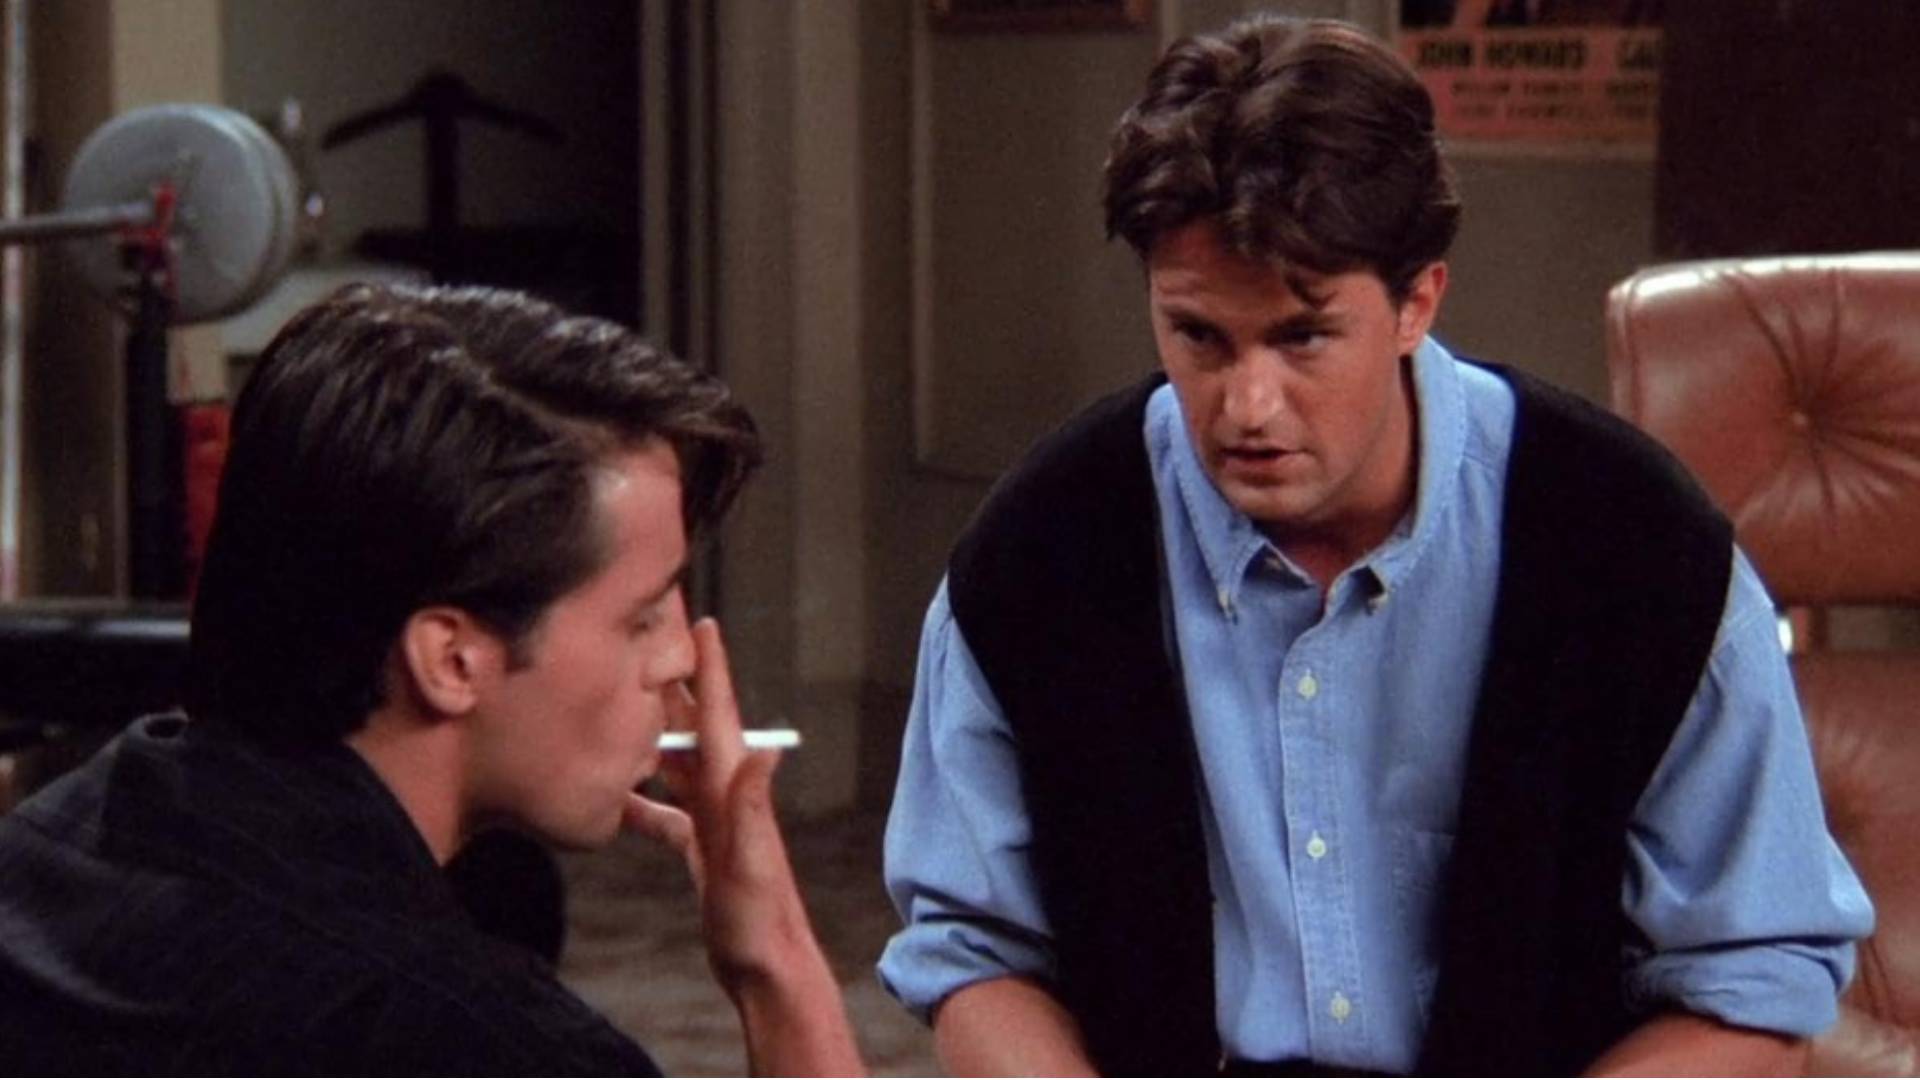 “Gentileza y generosidad de espíritu”: actores que trabajaron en Friends despidieron a Matthew Perry